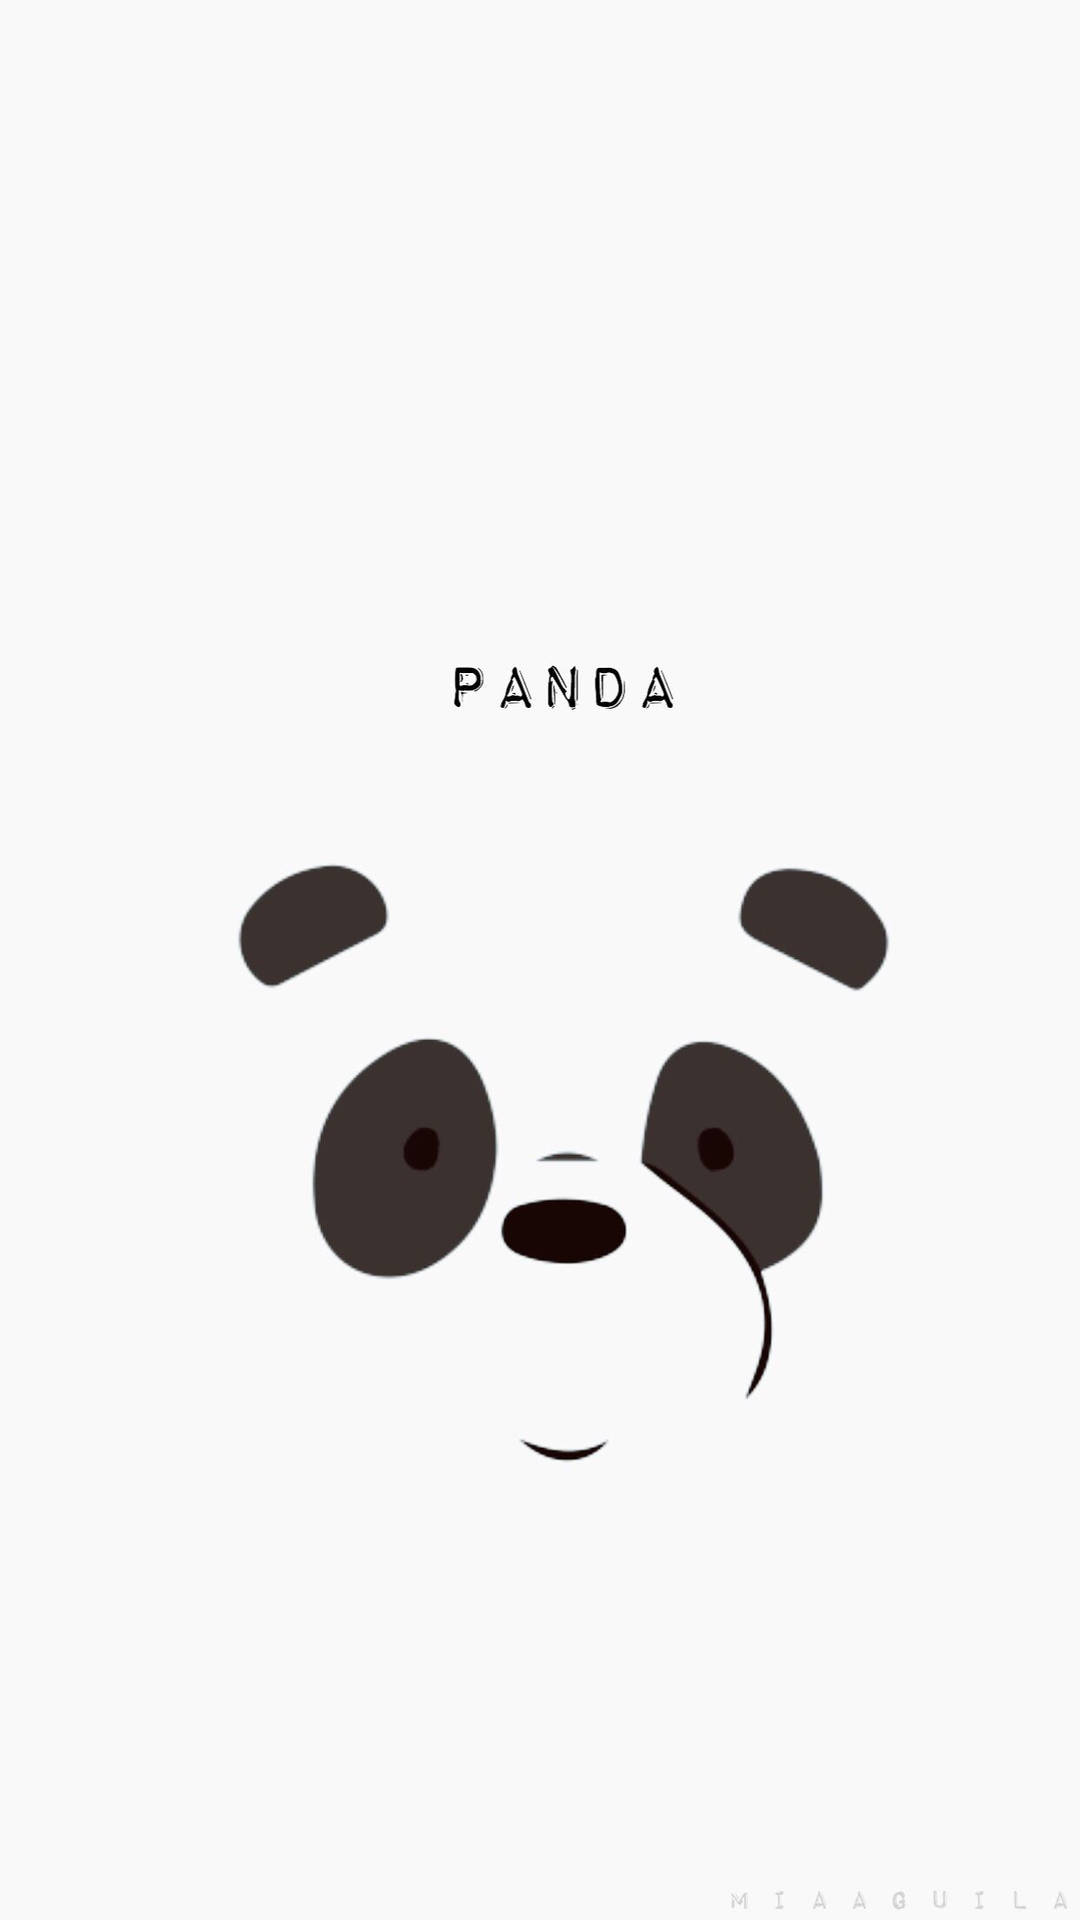 Aesthetic Panda Face Minimalist Wallpaper